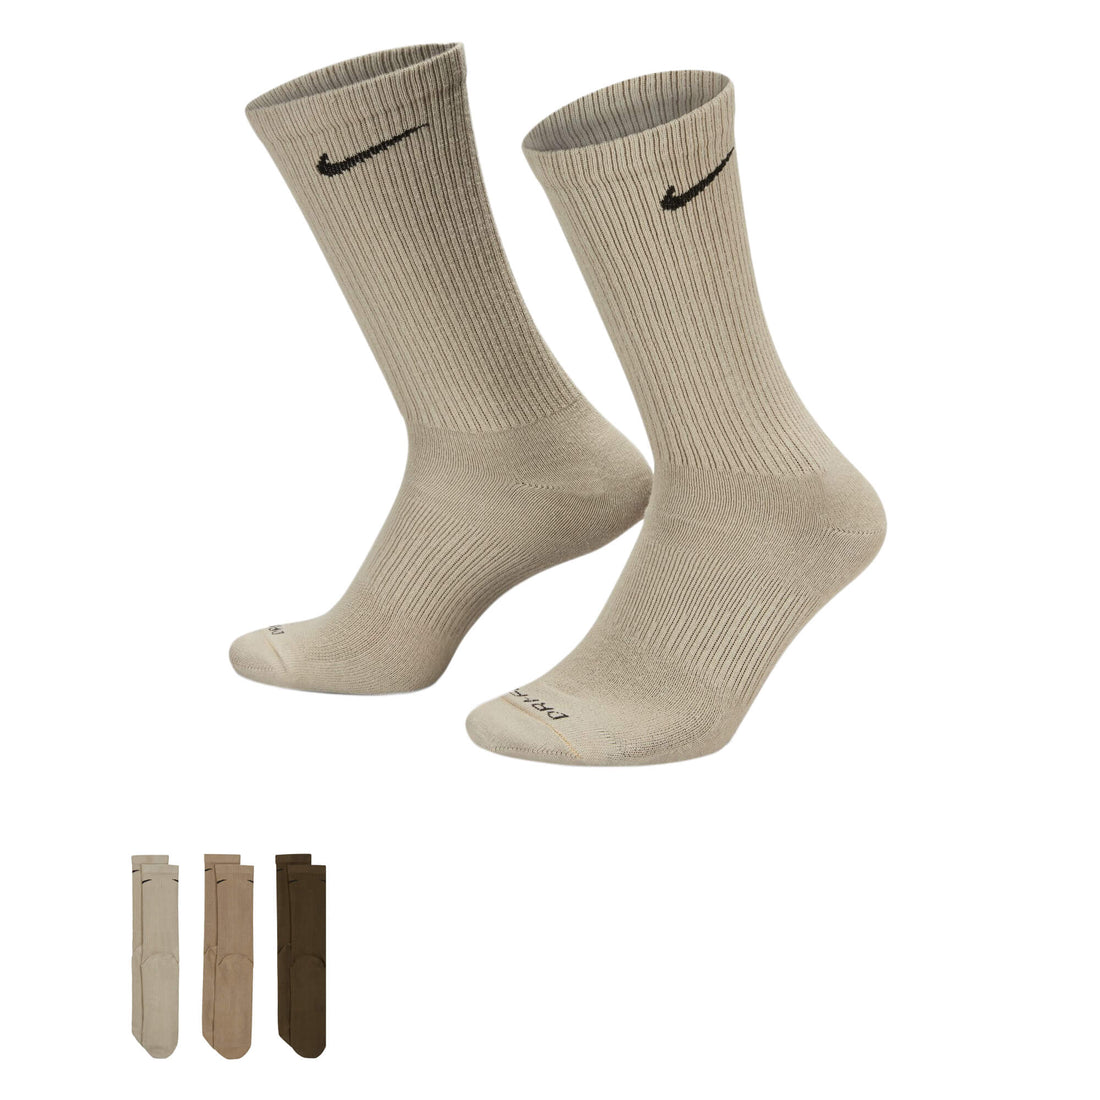 Nike Everyday Plus Cushioned Socks 3 Pack Olive/Stone/Khaki – Azteca Soccer